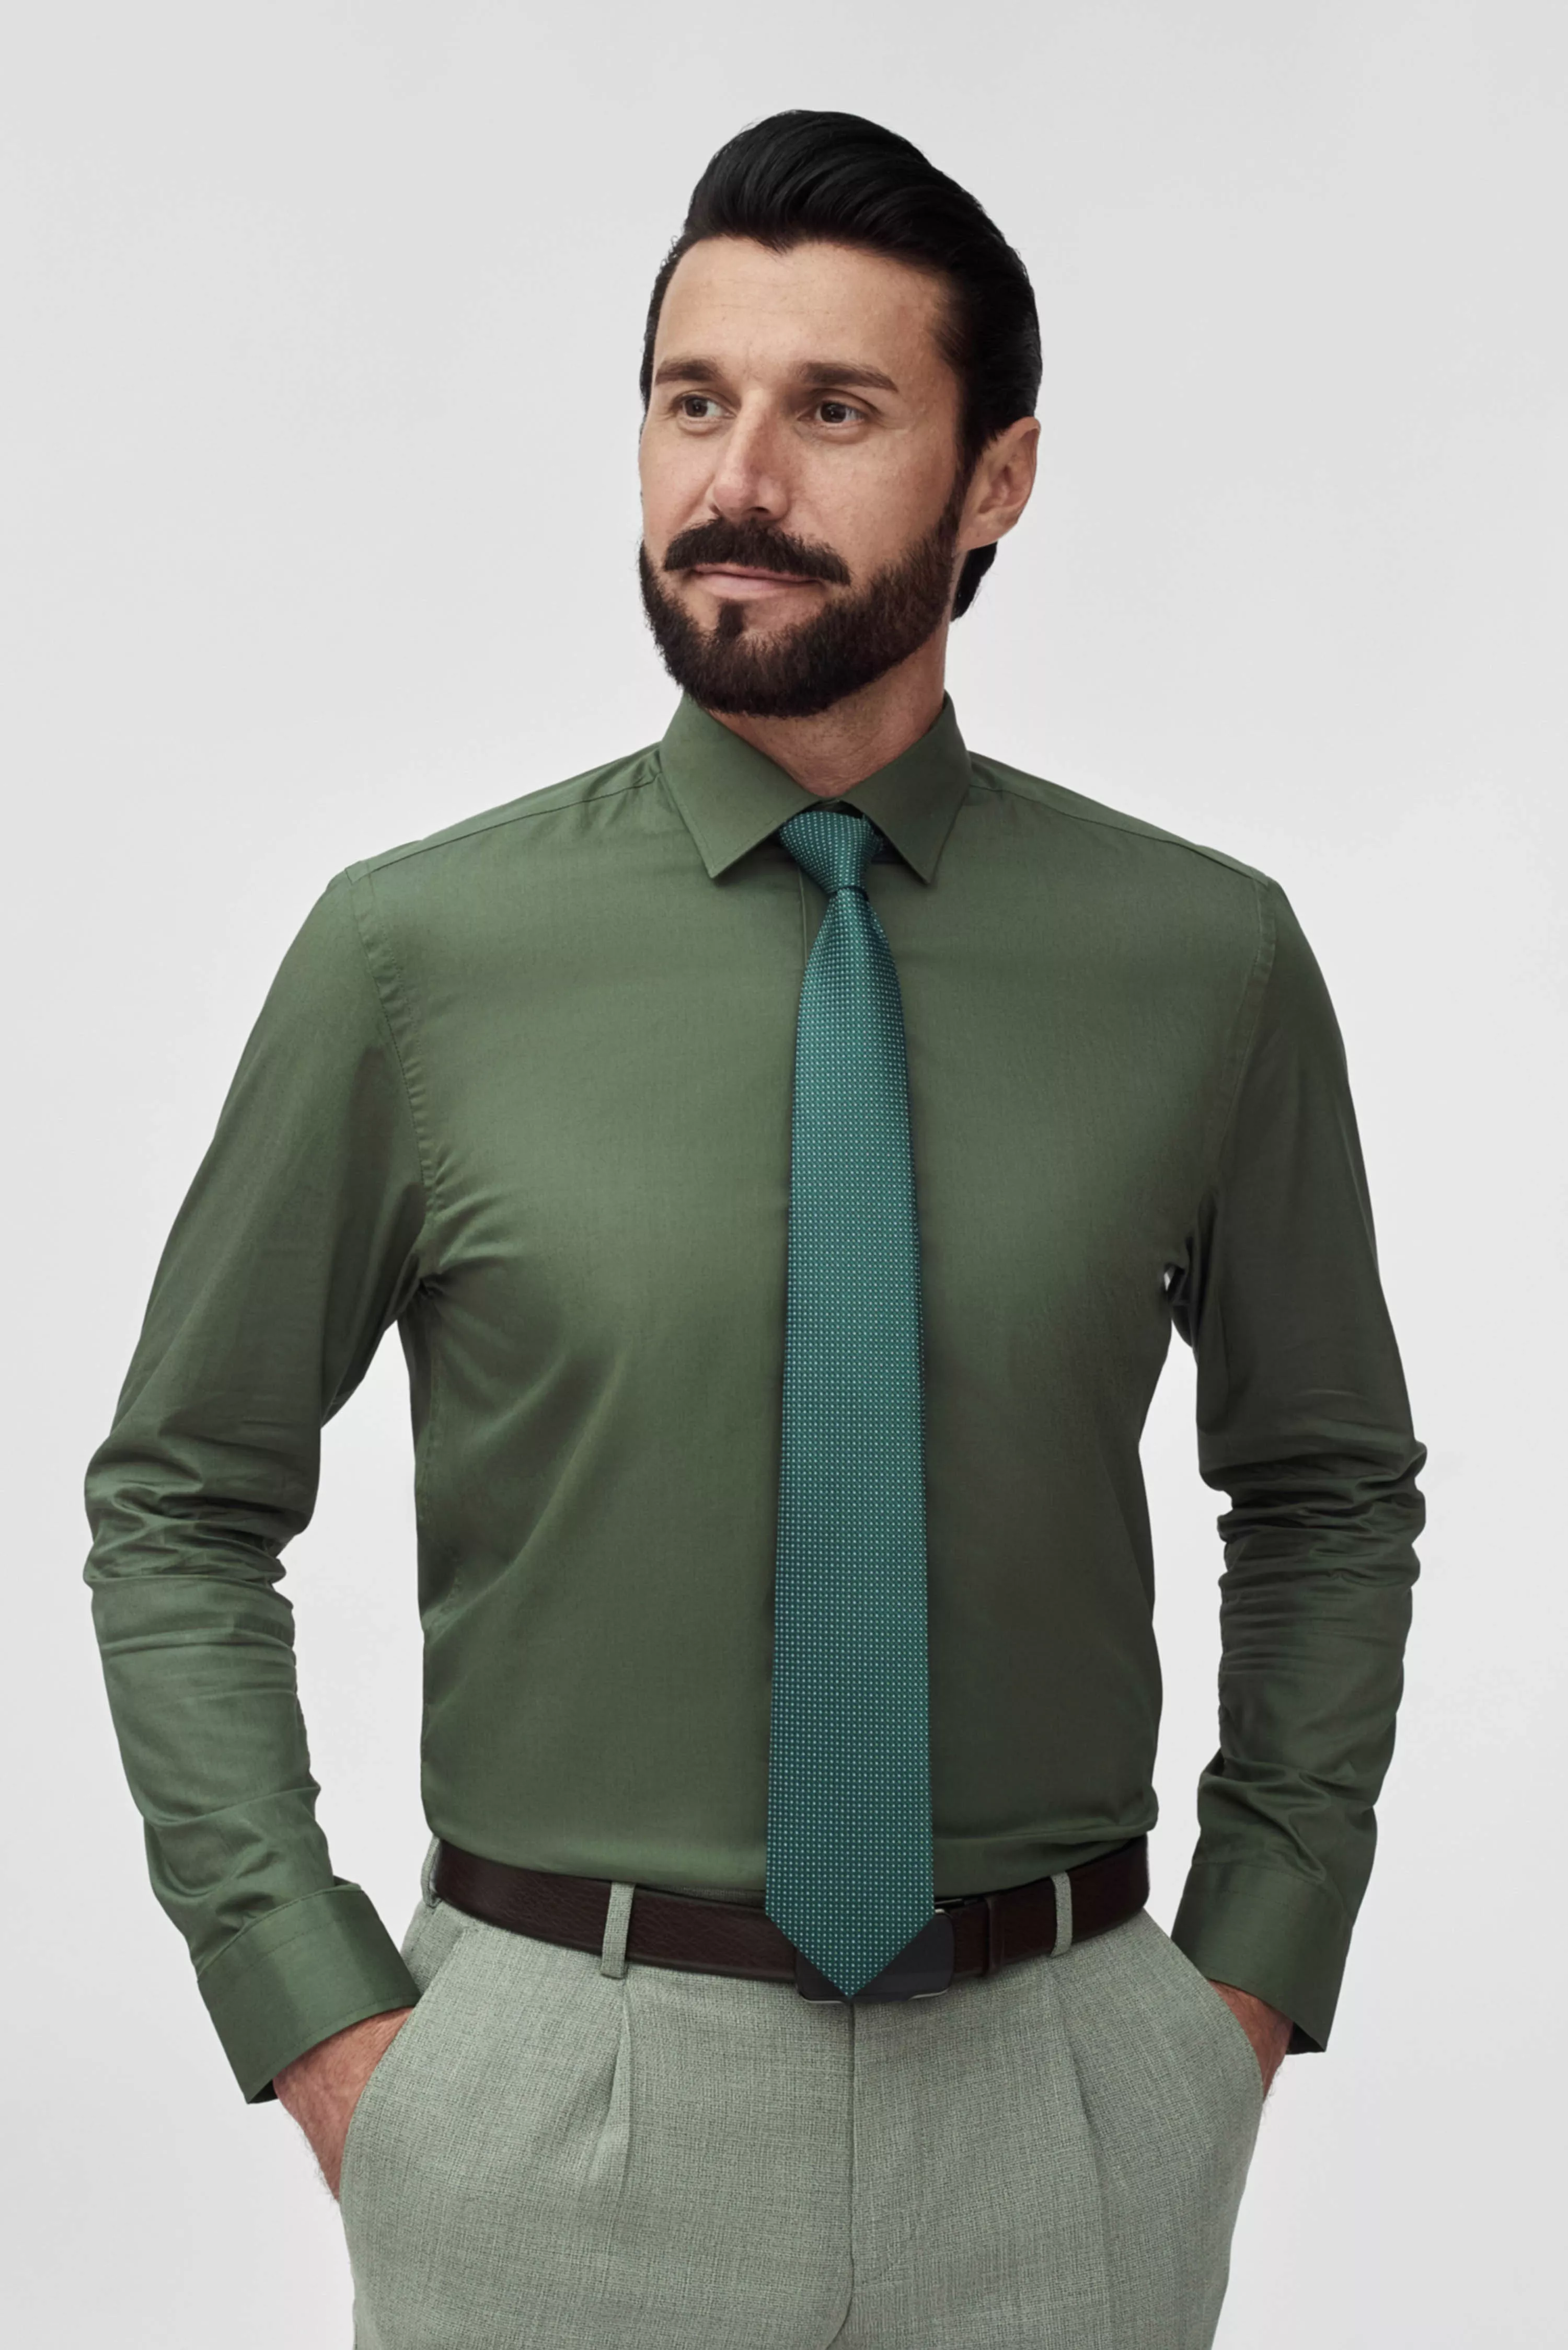 Зеленый галстук с узором